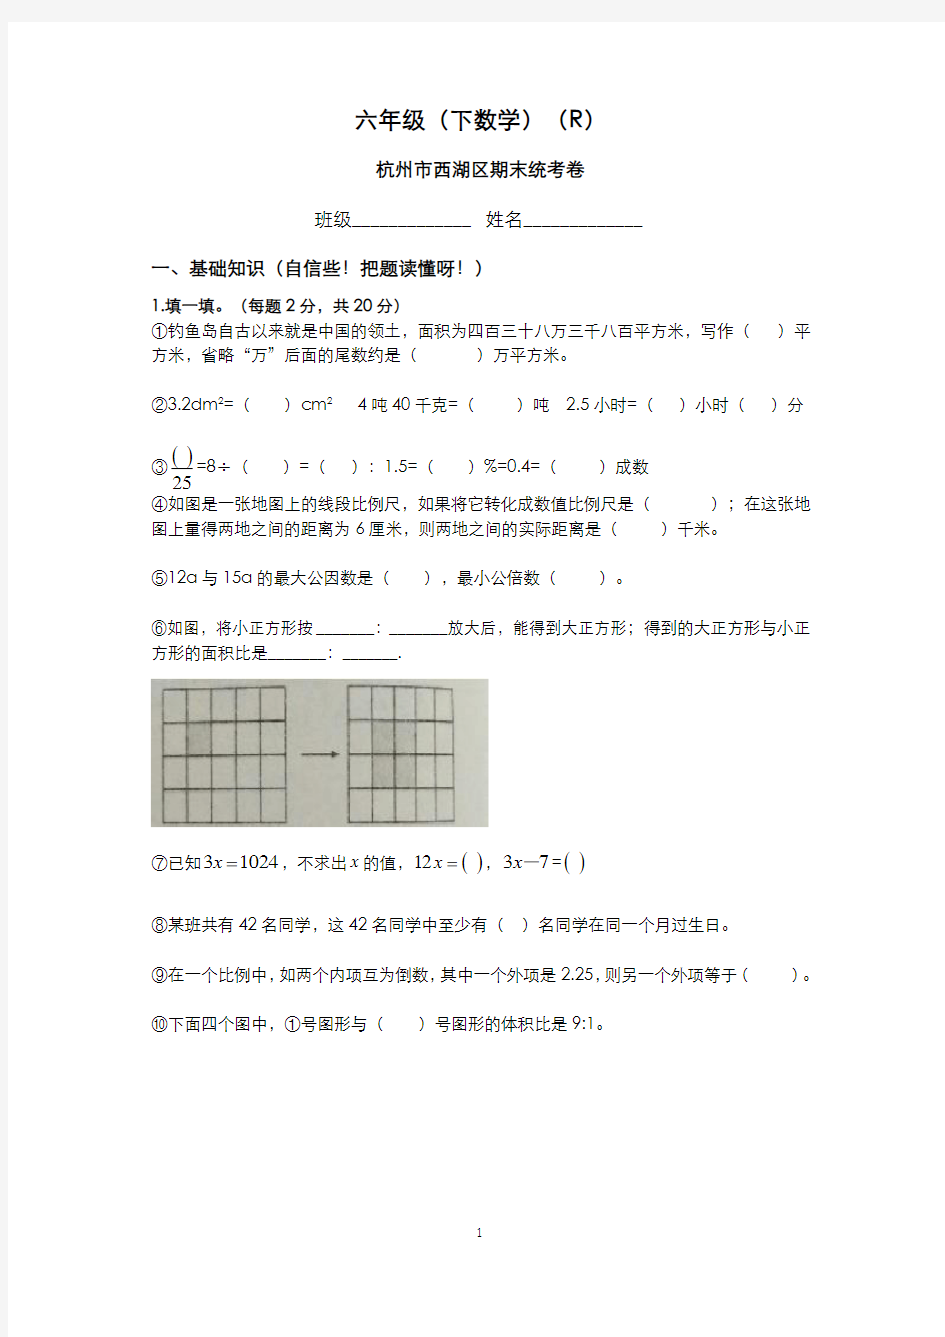 六年级(下数学)(R)杭州市西湖区期末统考卷